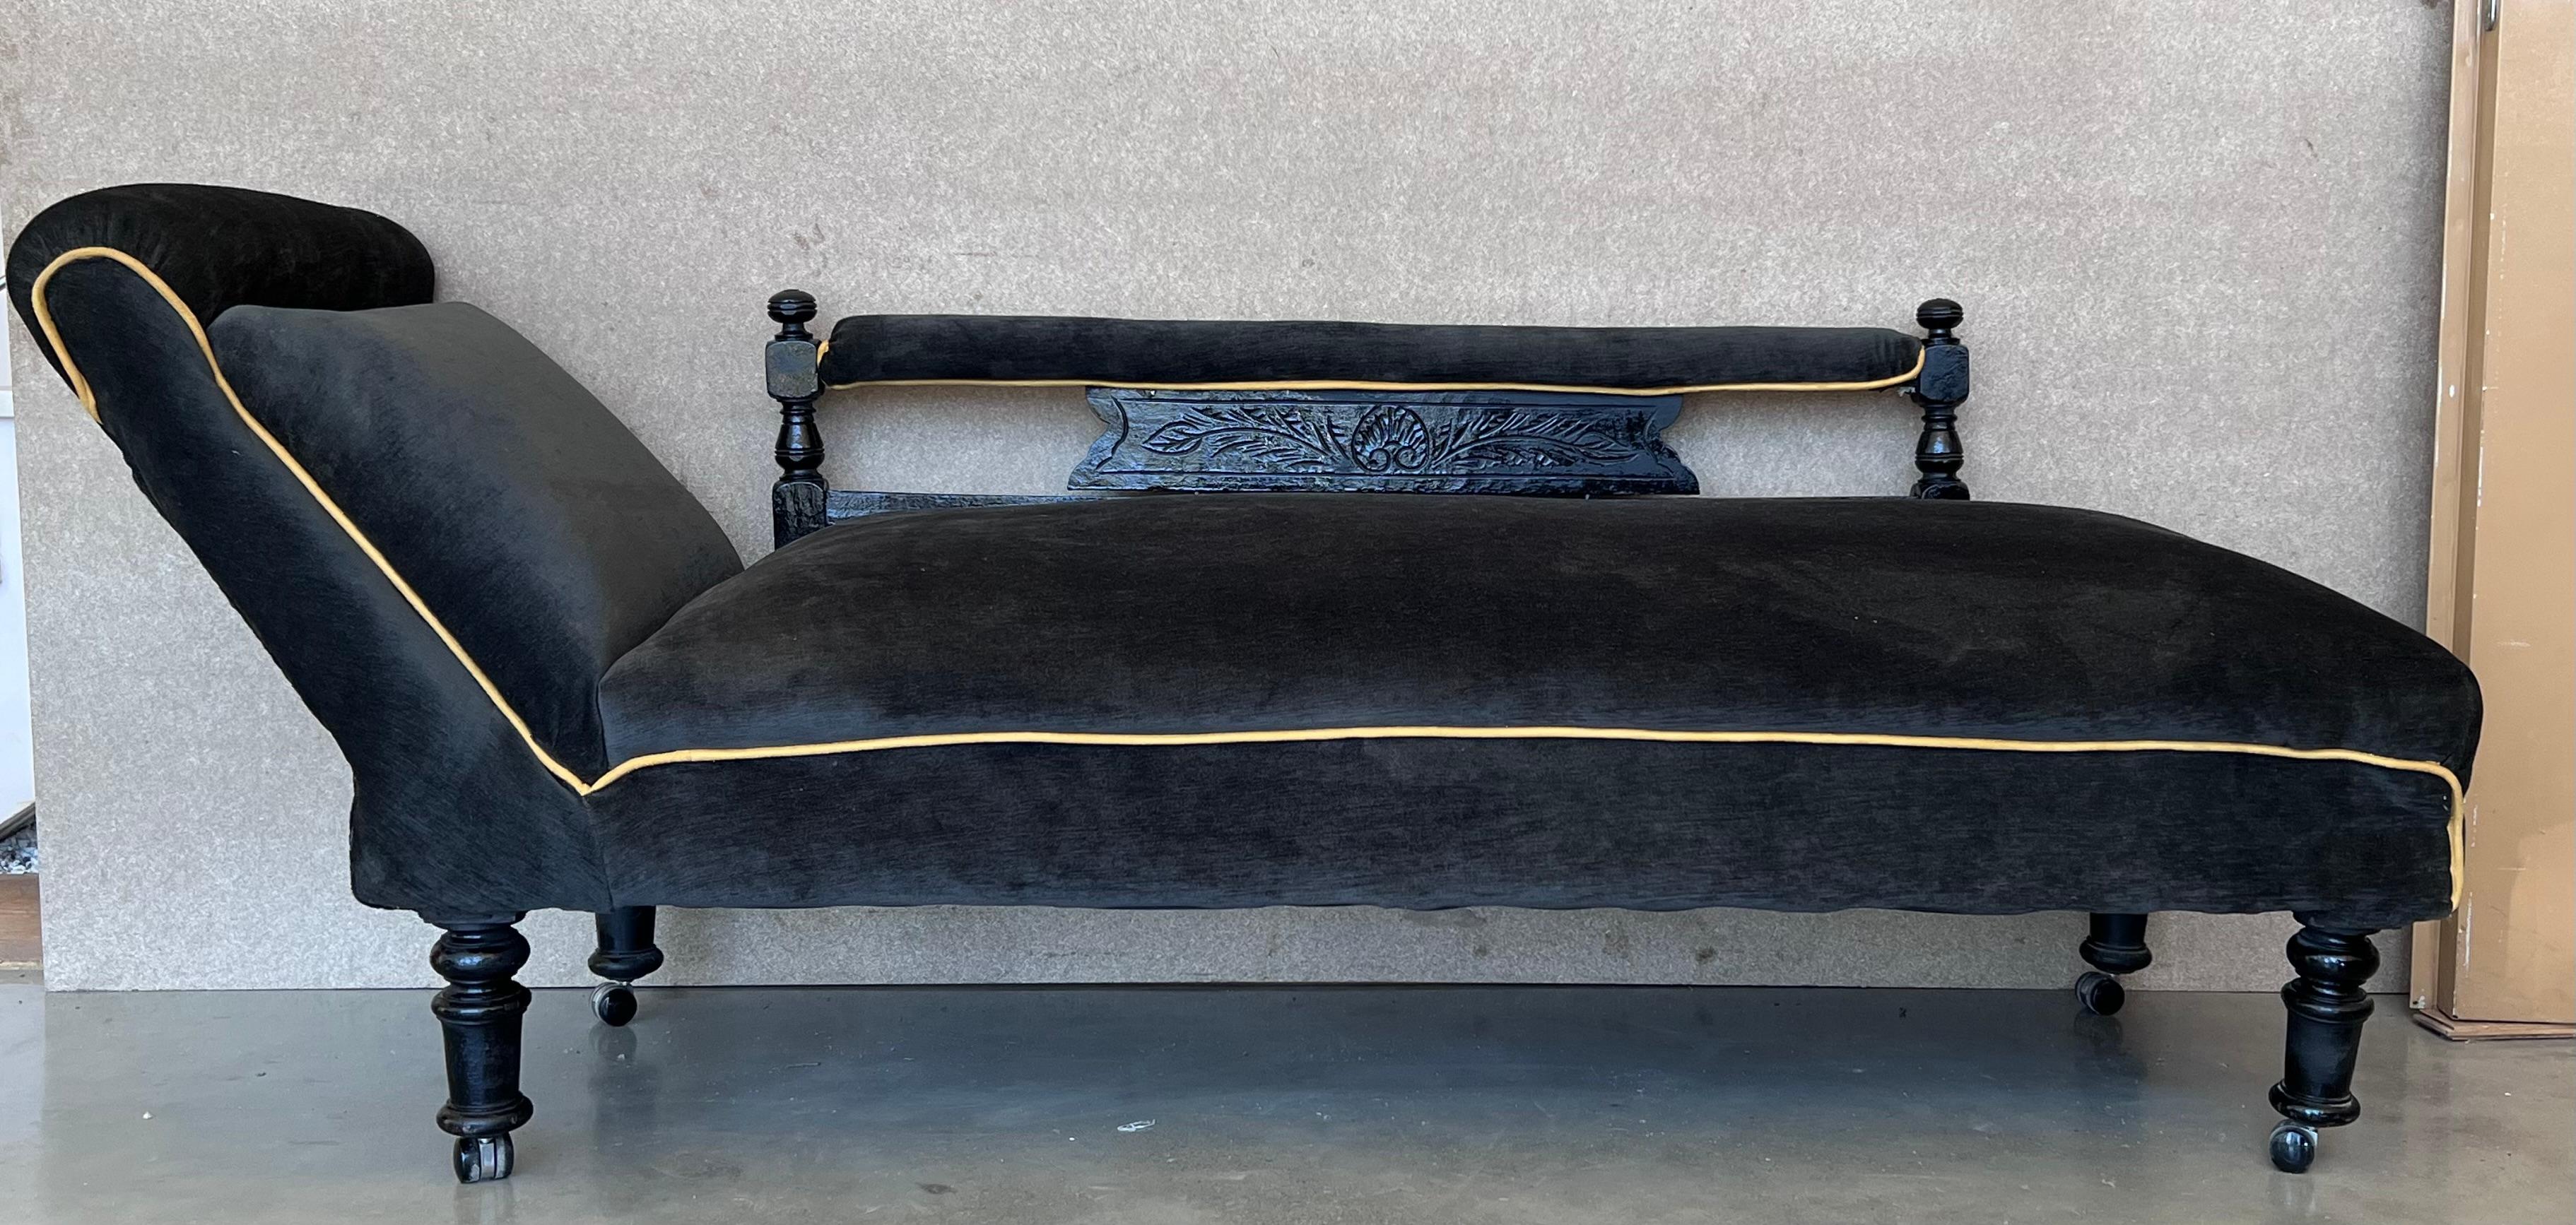 Chaise longue particulière et unique des années 1940 de style Art Déco en précieux velours noir. Les pieds sont en bois massif tourné et laqué noir avec des roues de travail. Vous pouvez ouvrir la chaise pour en faire un lit parfait.
Entièrement